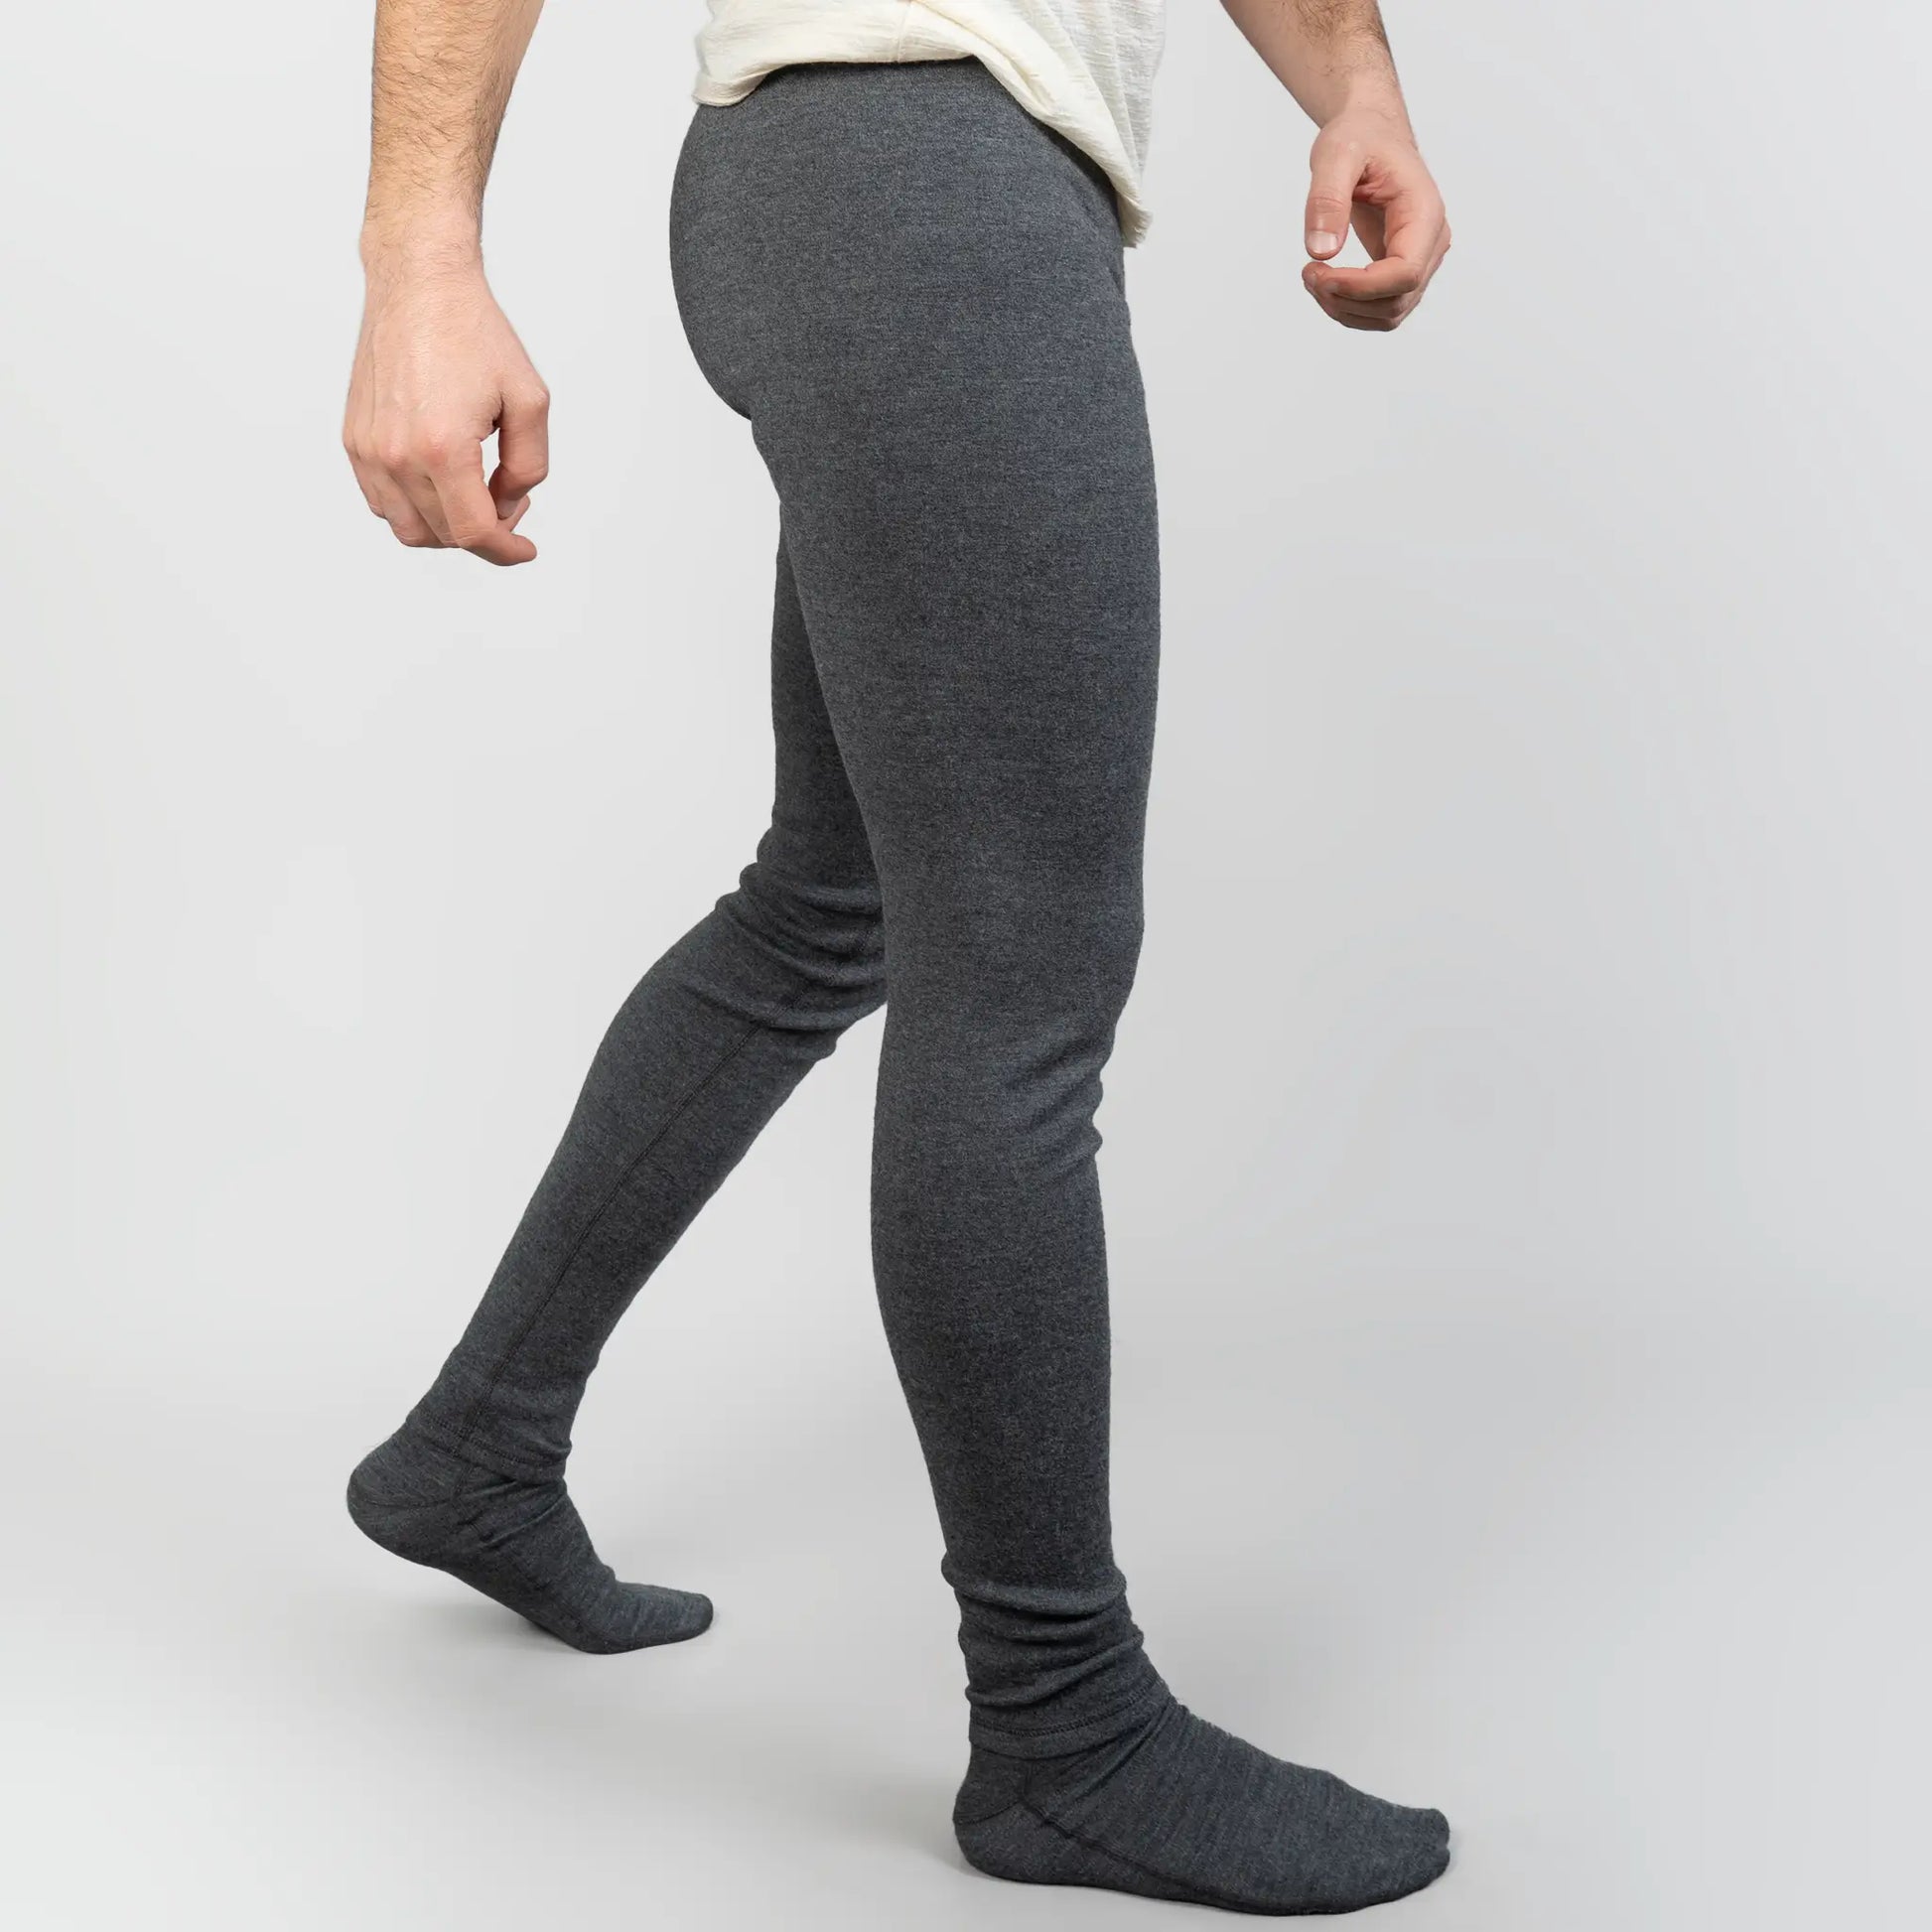 Men's Alpaca Wool Thermal Leggings 250: Lightweight